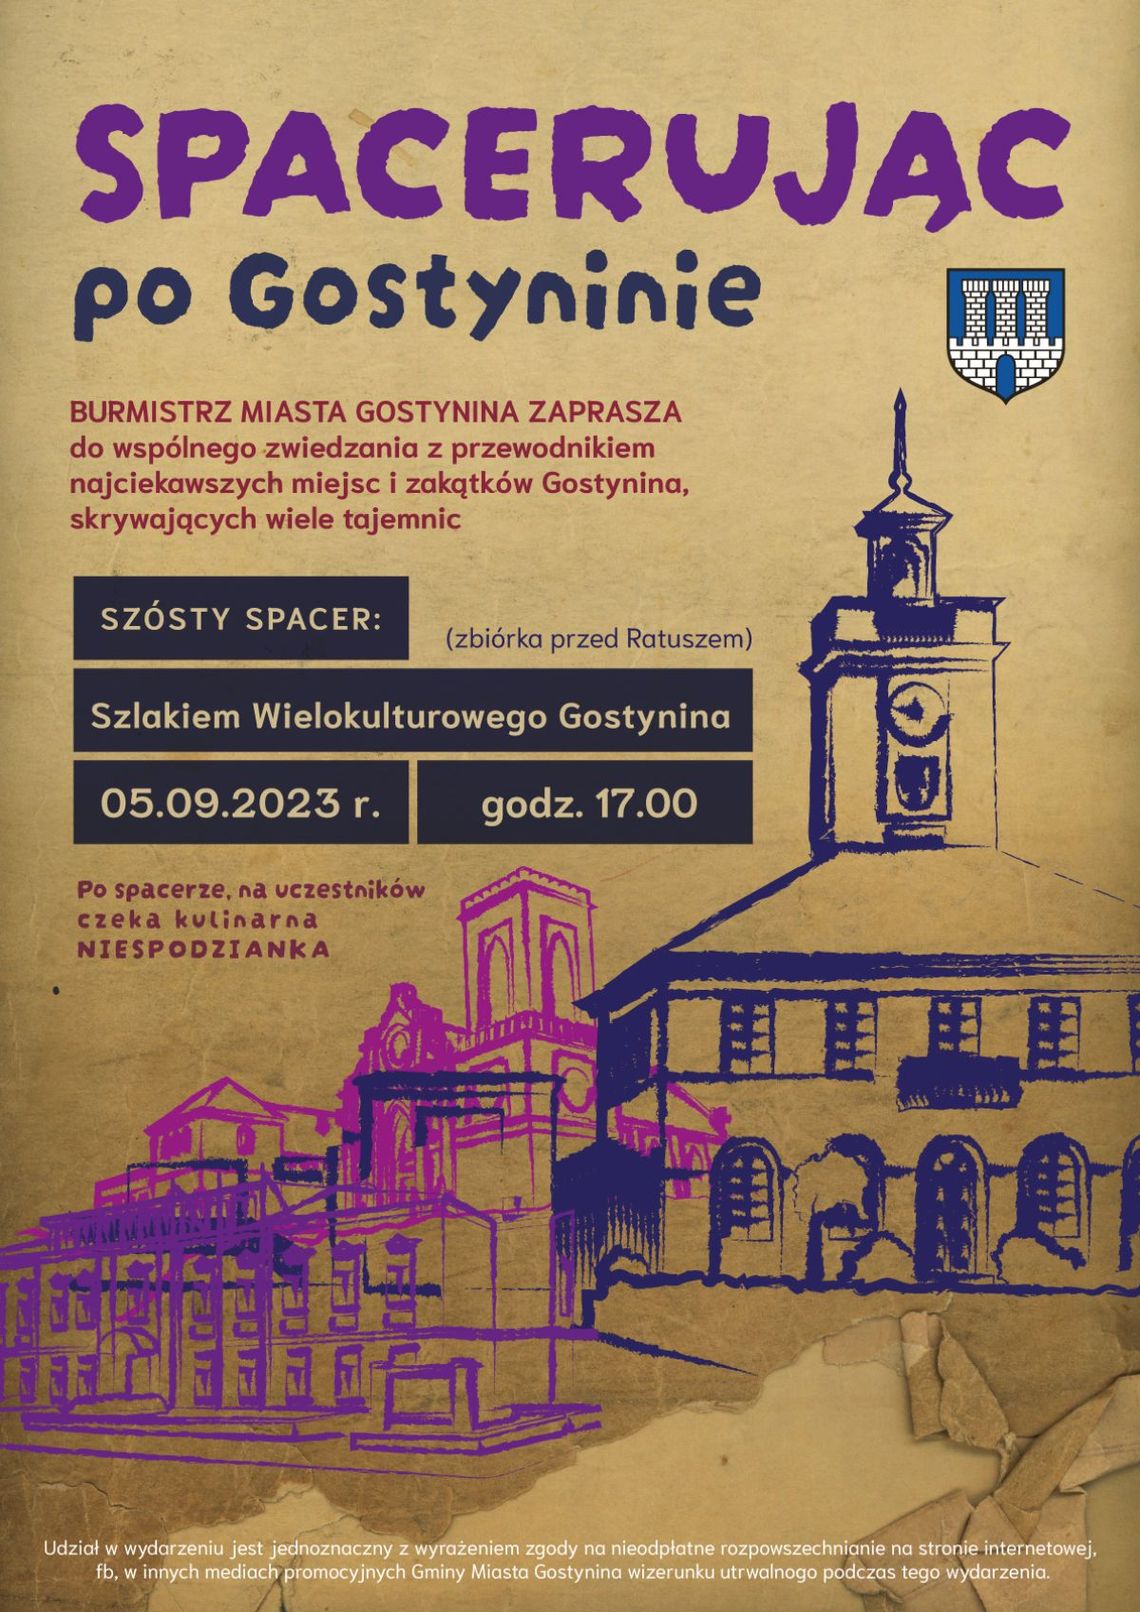 We wtorek, 5 września, ostatni spacer szlakiem "Wielokulturowego Gostynina"